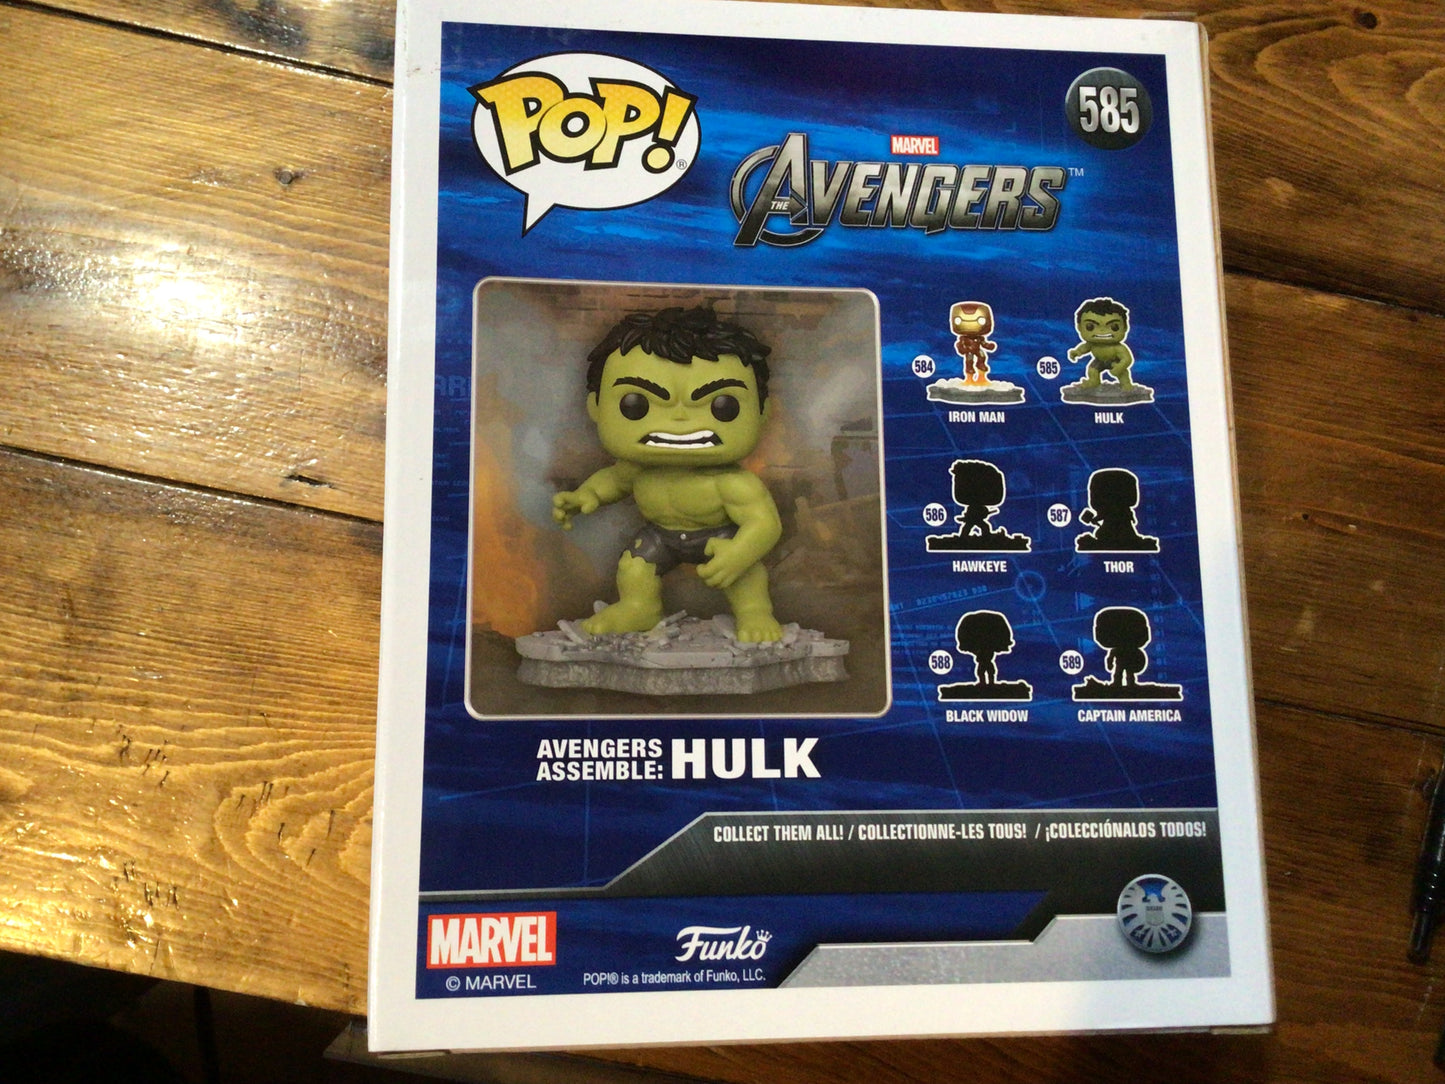 Marvel Avengers Assemble - Hulk #585 - Funko Pop! Deluxe Vinyl Figure